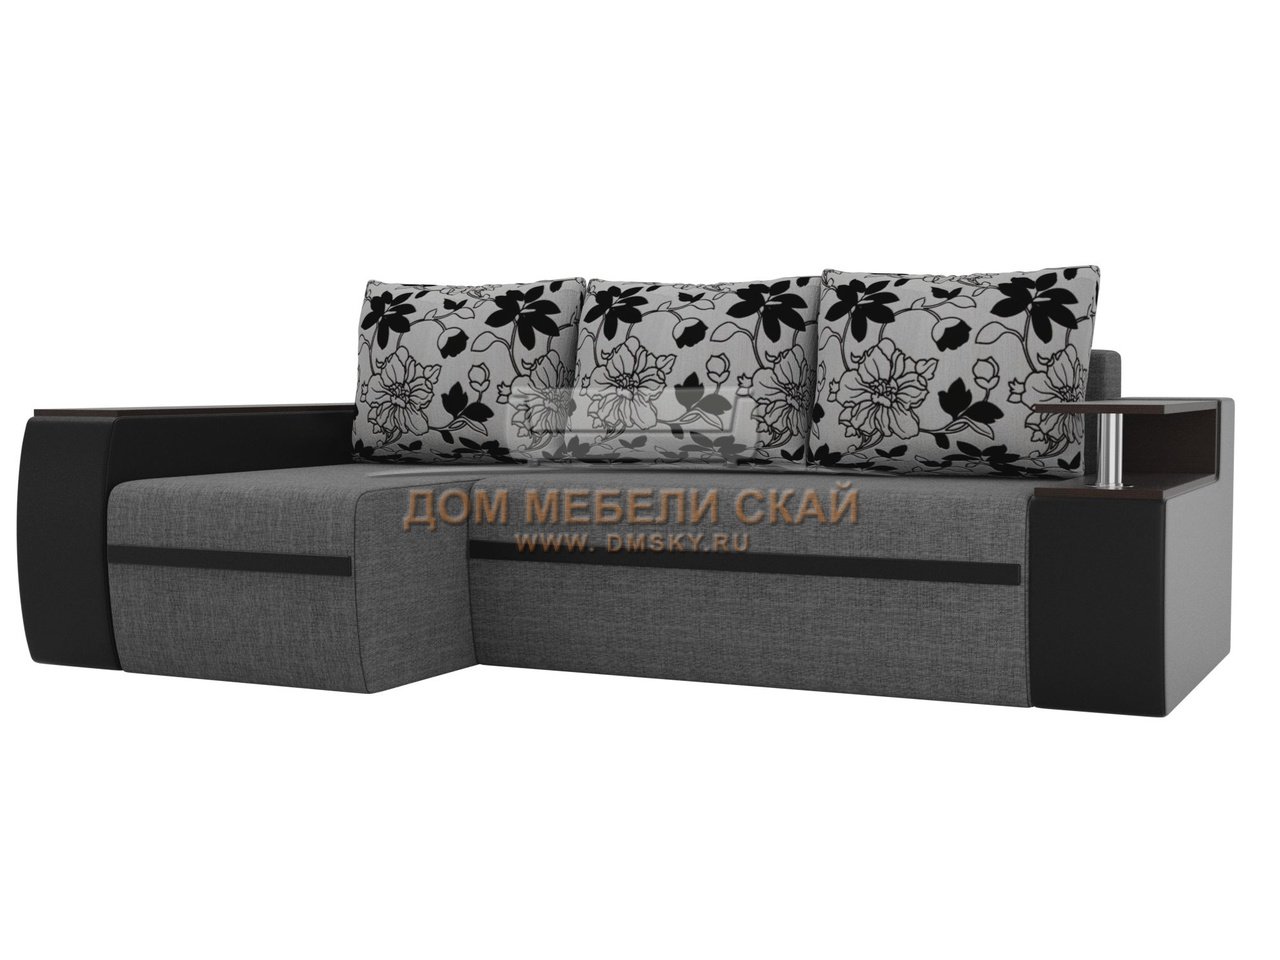 Угловой диван-кровать левый Ричмонд, серый/черный/цветы/рогожка/экокожа/флокна рогожке - купить в Москве недорого по цене 51 990 руб. (арт. B10026271)